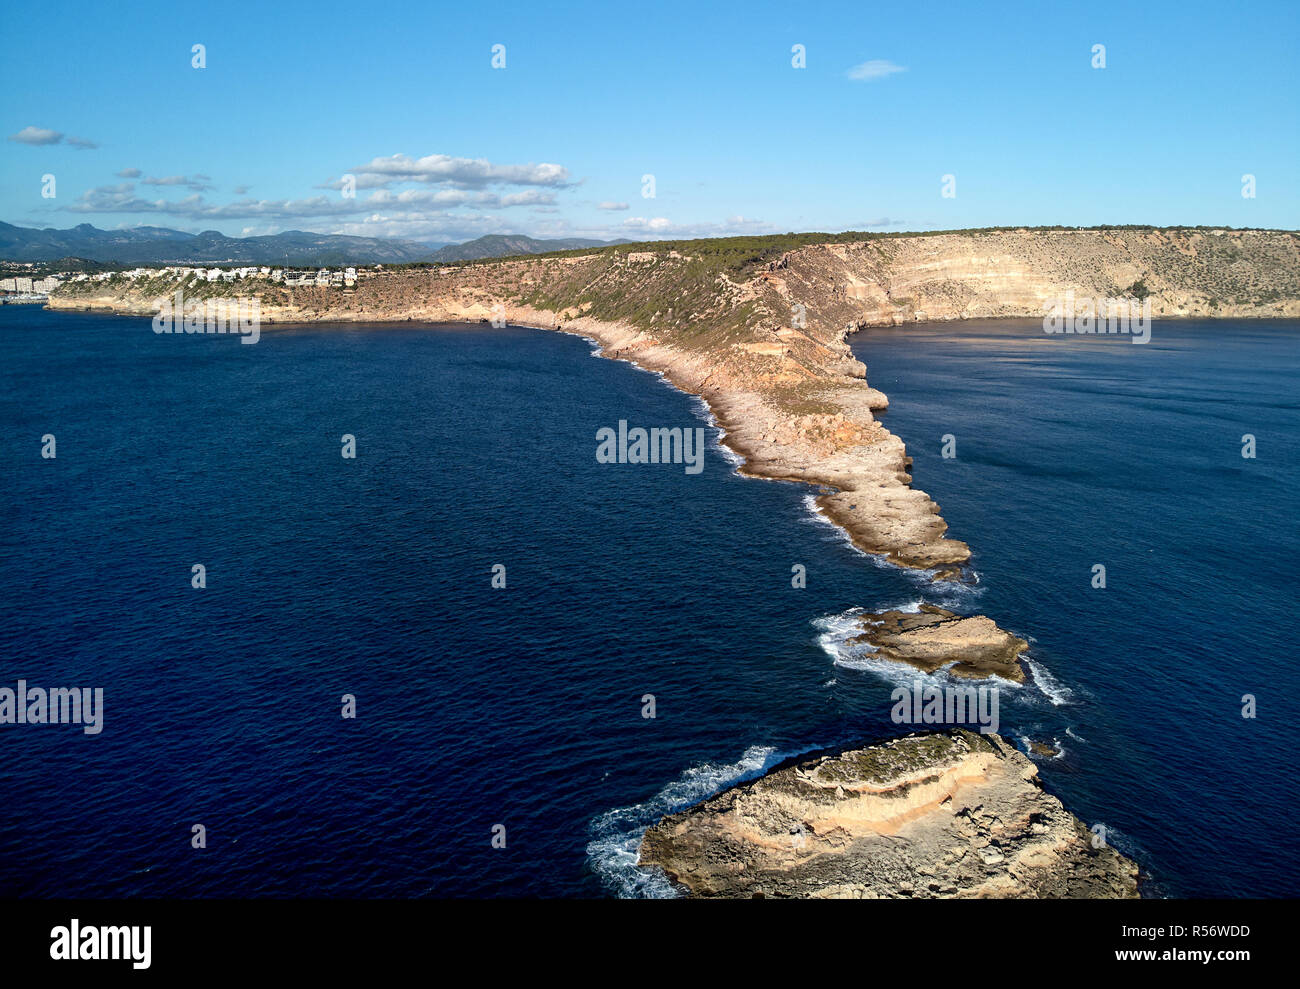 Drone aérien de la photographie Es Ribell côte rocheuse et mer Méditerranée paisible baie. Majorque ou l'île de Majorque, Espagne Banque D'Images